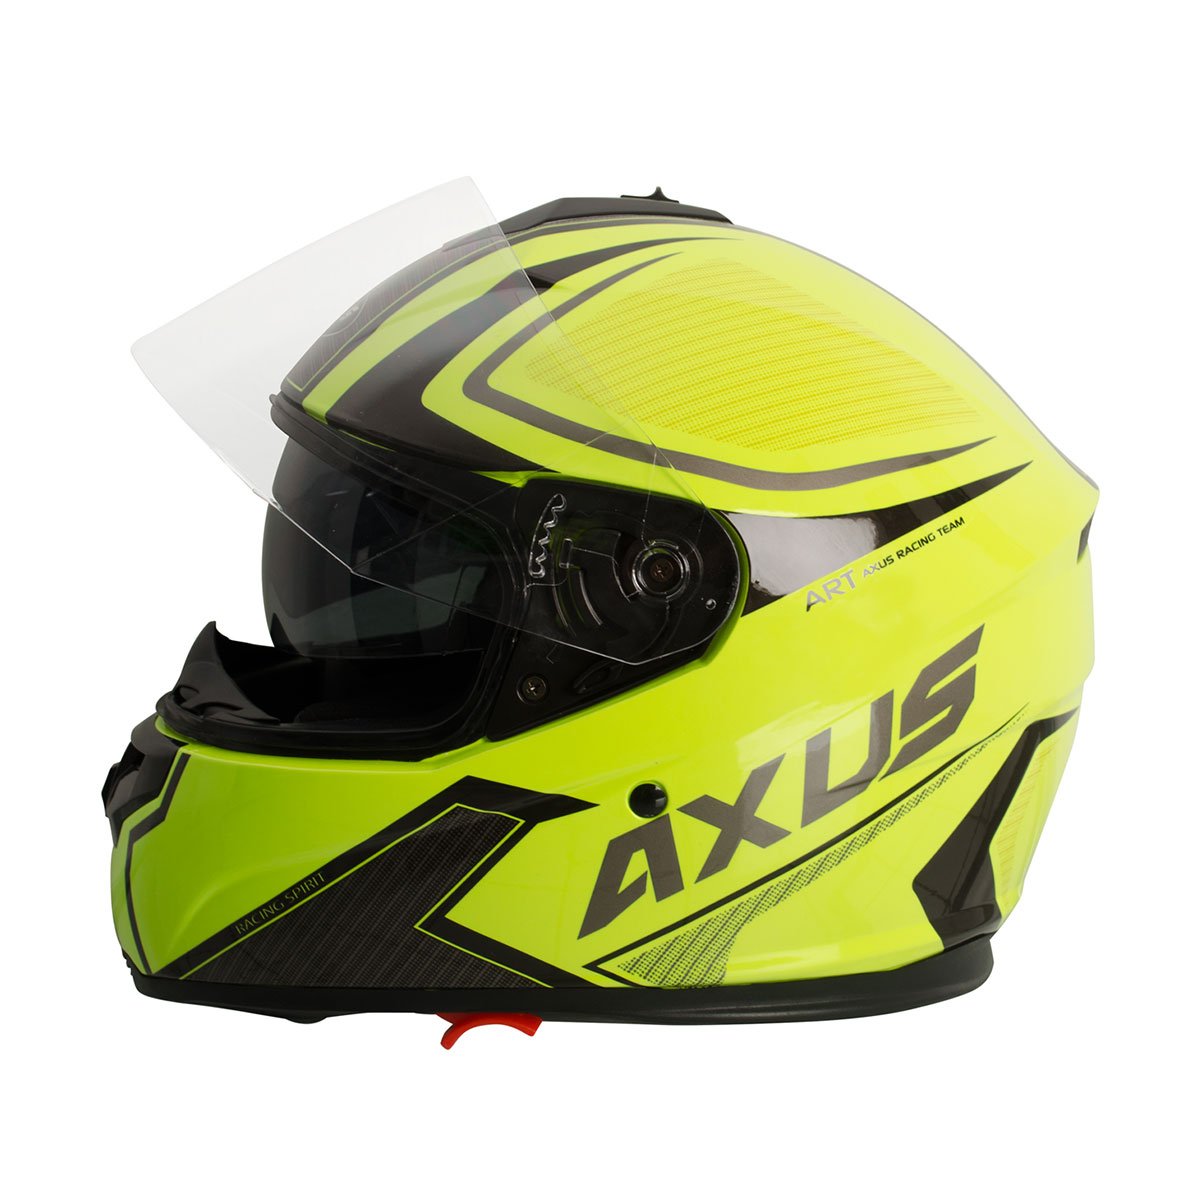 Casco Cerrado Doble Visor Racing Amarillo Axus - Extra Grande